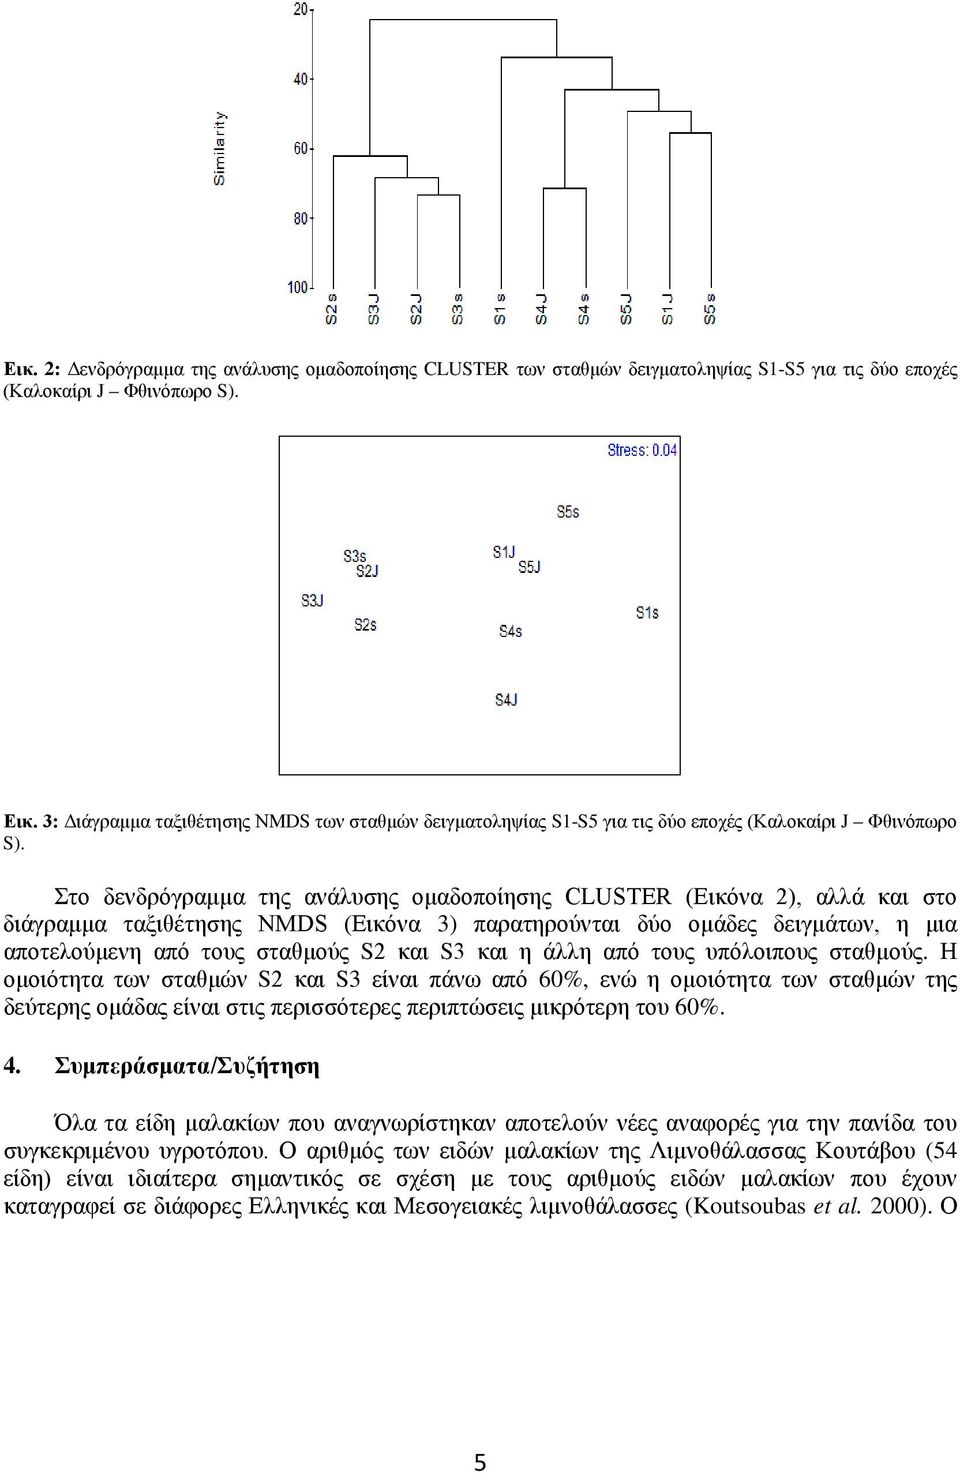 Στο δενδρόγραμμα της ανάλυσης ομαδοποίησης CLUSTER (Εικόνα 2), αλλά και στο διάγραμμα ταξιθέτησης ΝMDS (Εικόνα 3) παρατηρούνται δύο ομάδες δειγμάτων, η μια αποτελούμενη από τους σταθμούς S2 και S3